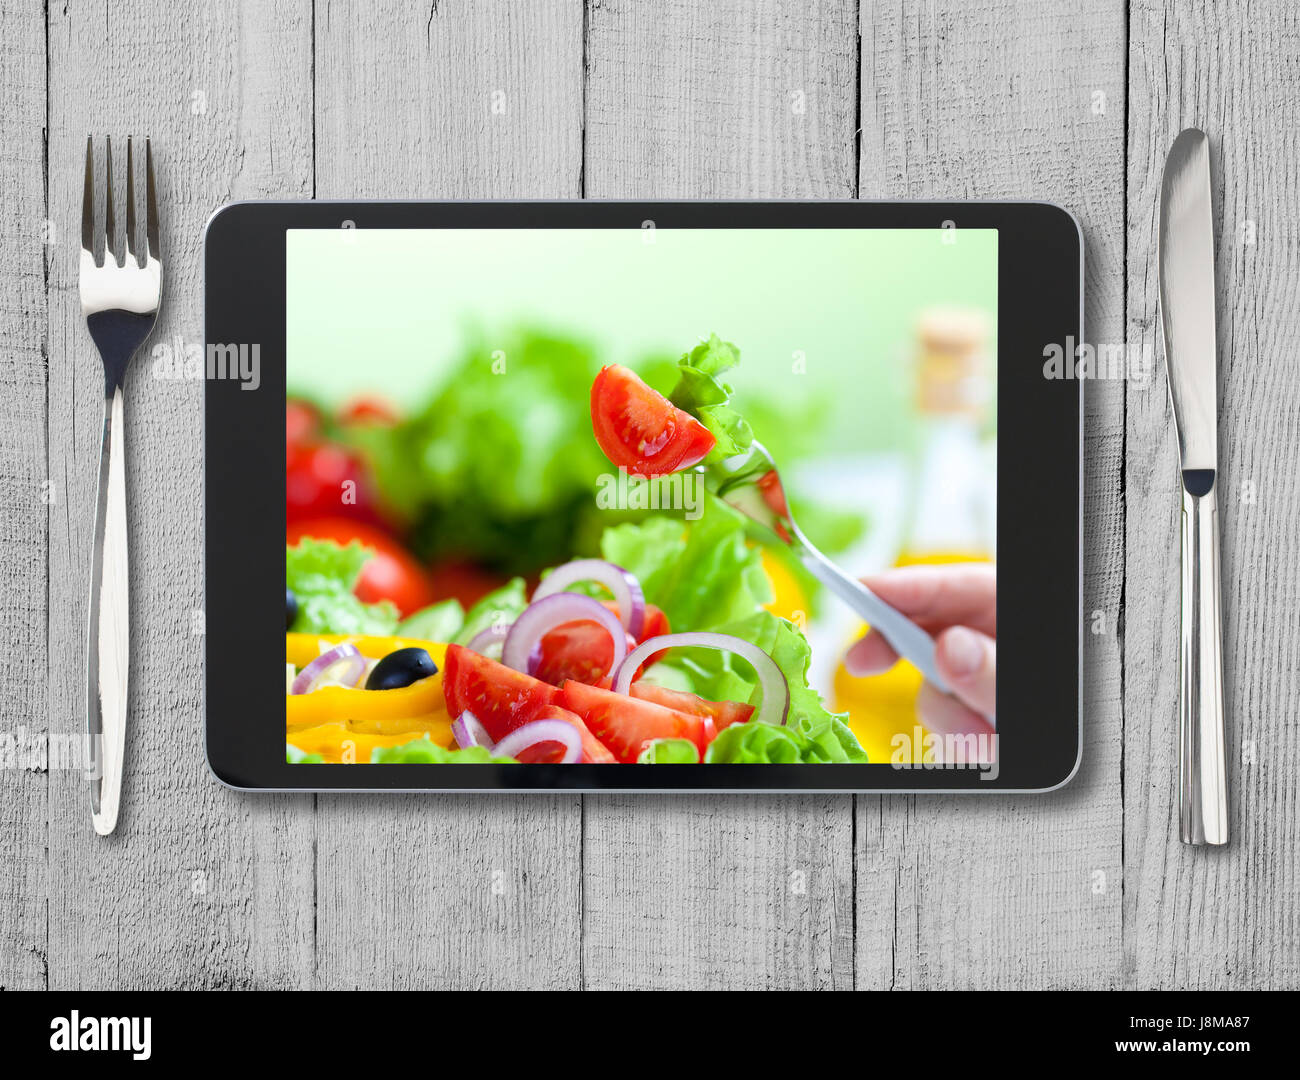 Nero tablet pc con cibo sano sullo schermo e tavolo in legno Foto Stock